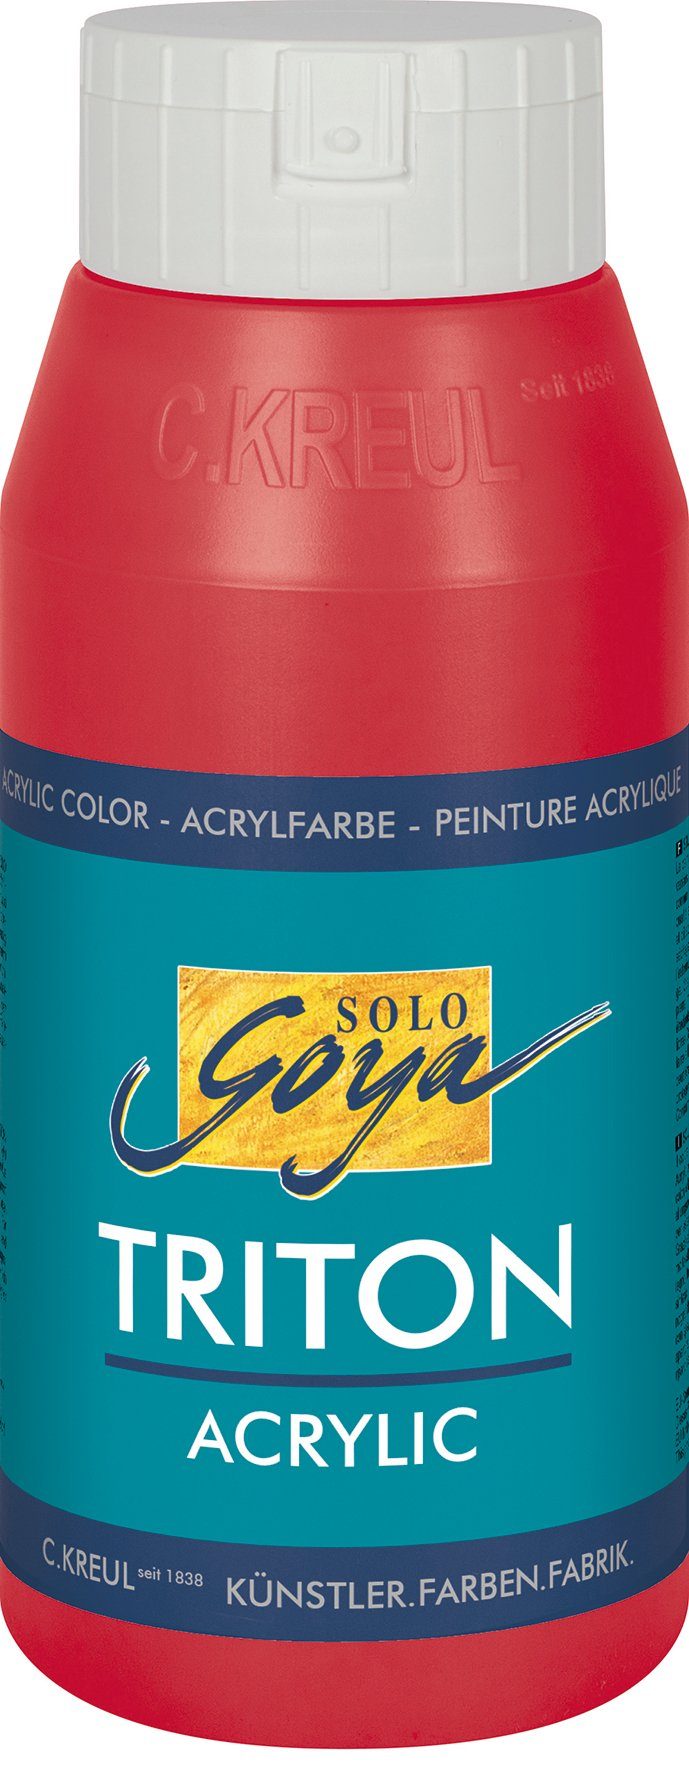 Kreul Acrylfarbe Solo Goya Triton Acrylic, 750 ml Weinrot